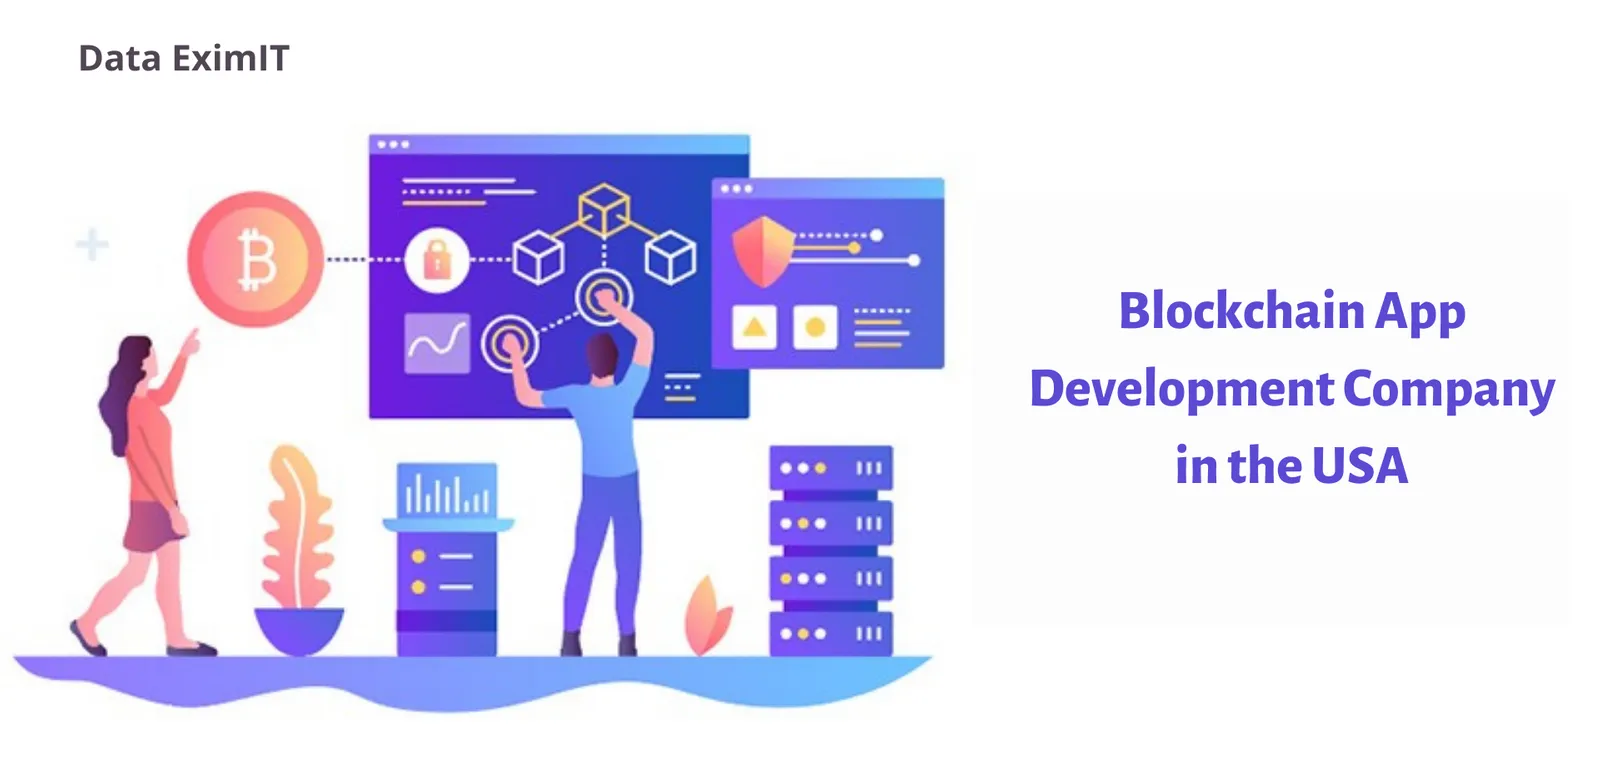 Blockchain App Development Company in the USA